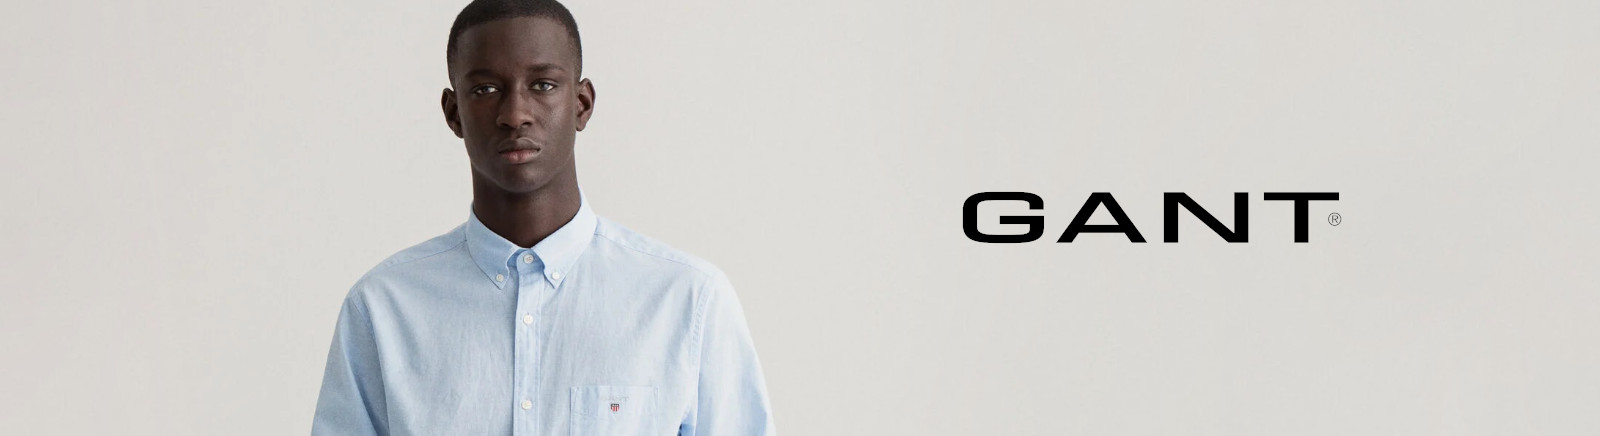 Gant Schnürschuhe für Herren im Online-Shop von GISY kaufen